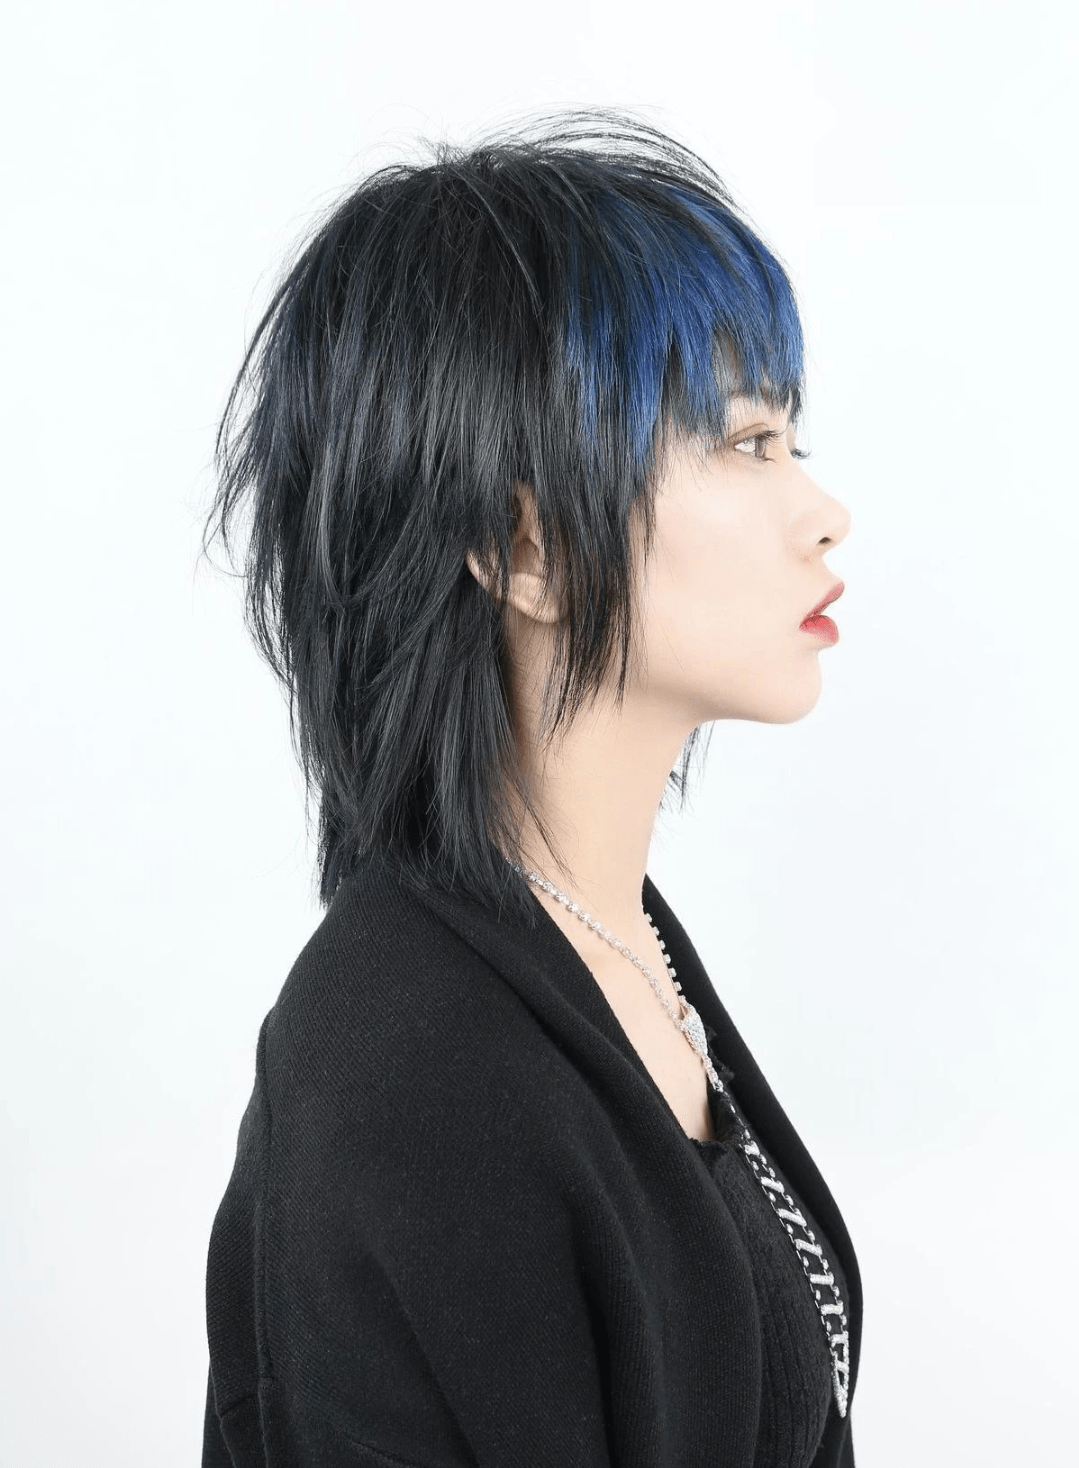 这款燕尾女士短发加入了蓝色的挑染,让整个发型更富层次感,越发的